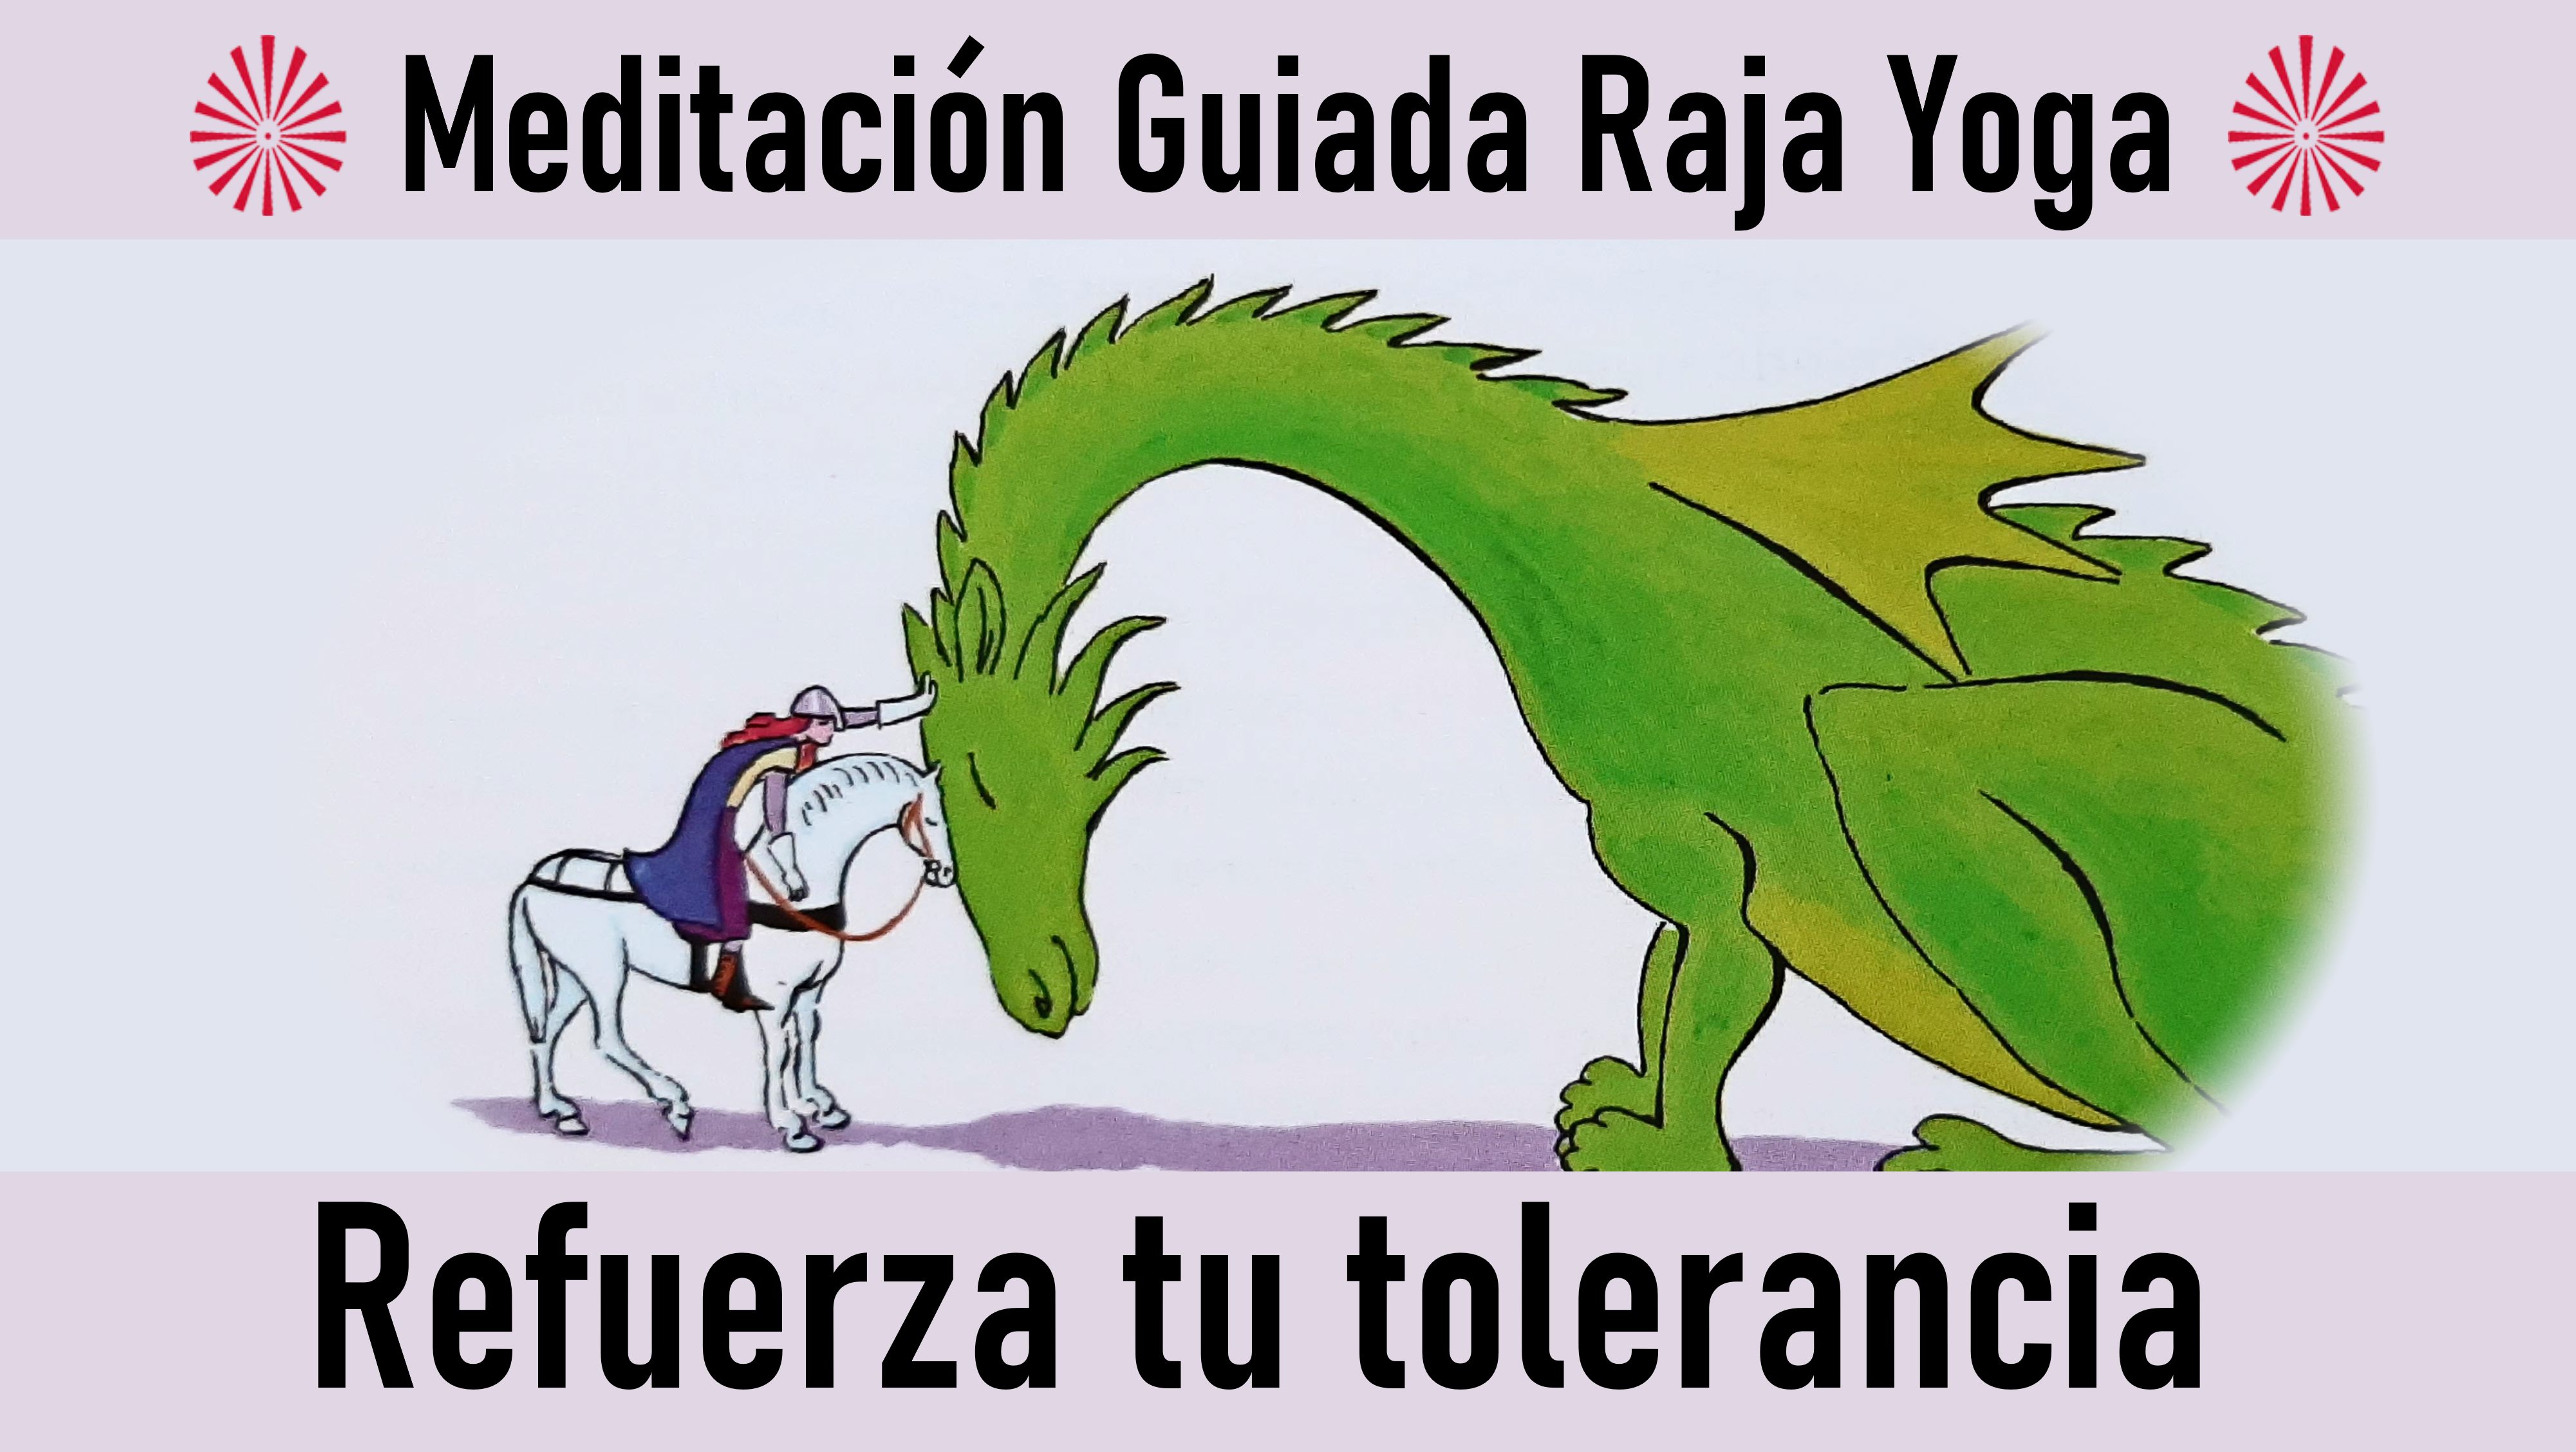 Meditación Raja Yoga: Refuerza tu tolerancia (23 Octubre 2020) On-line desde Madrid